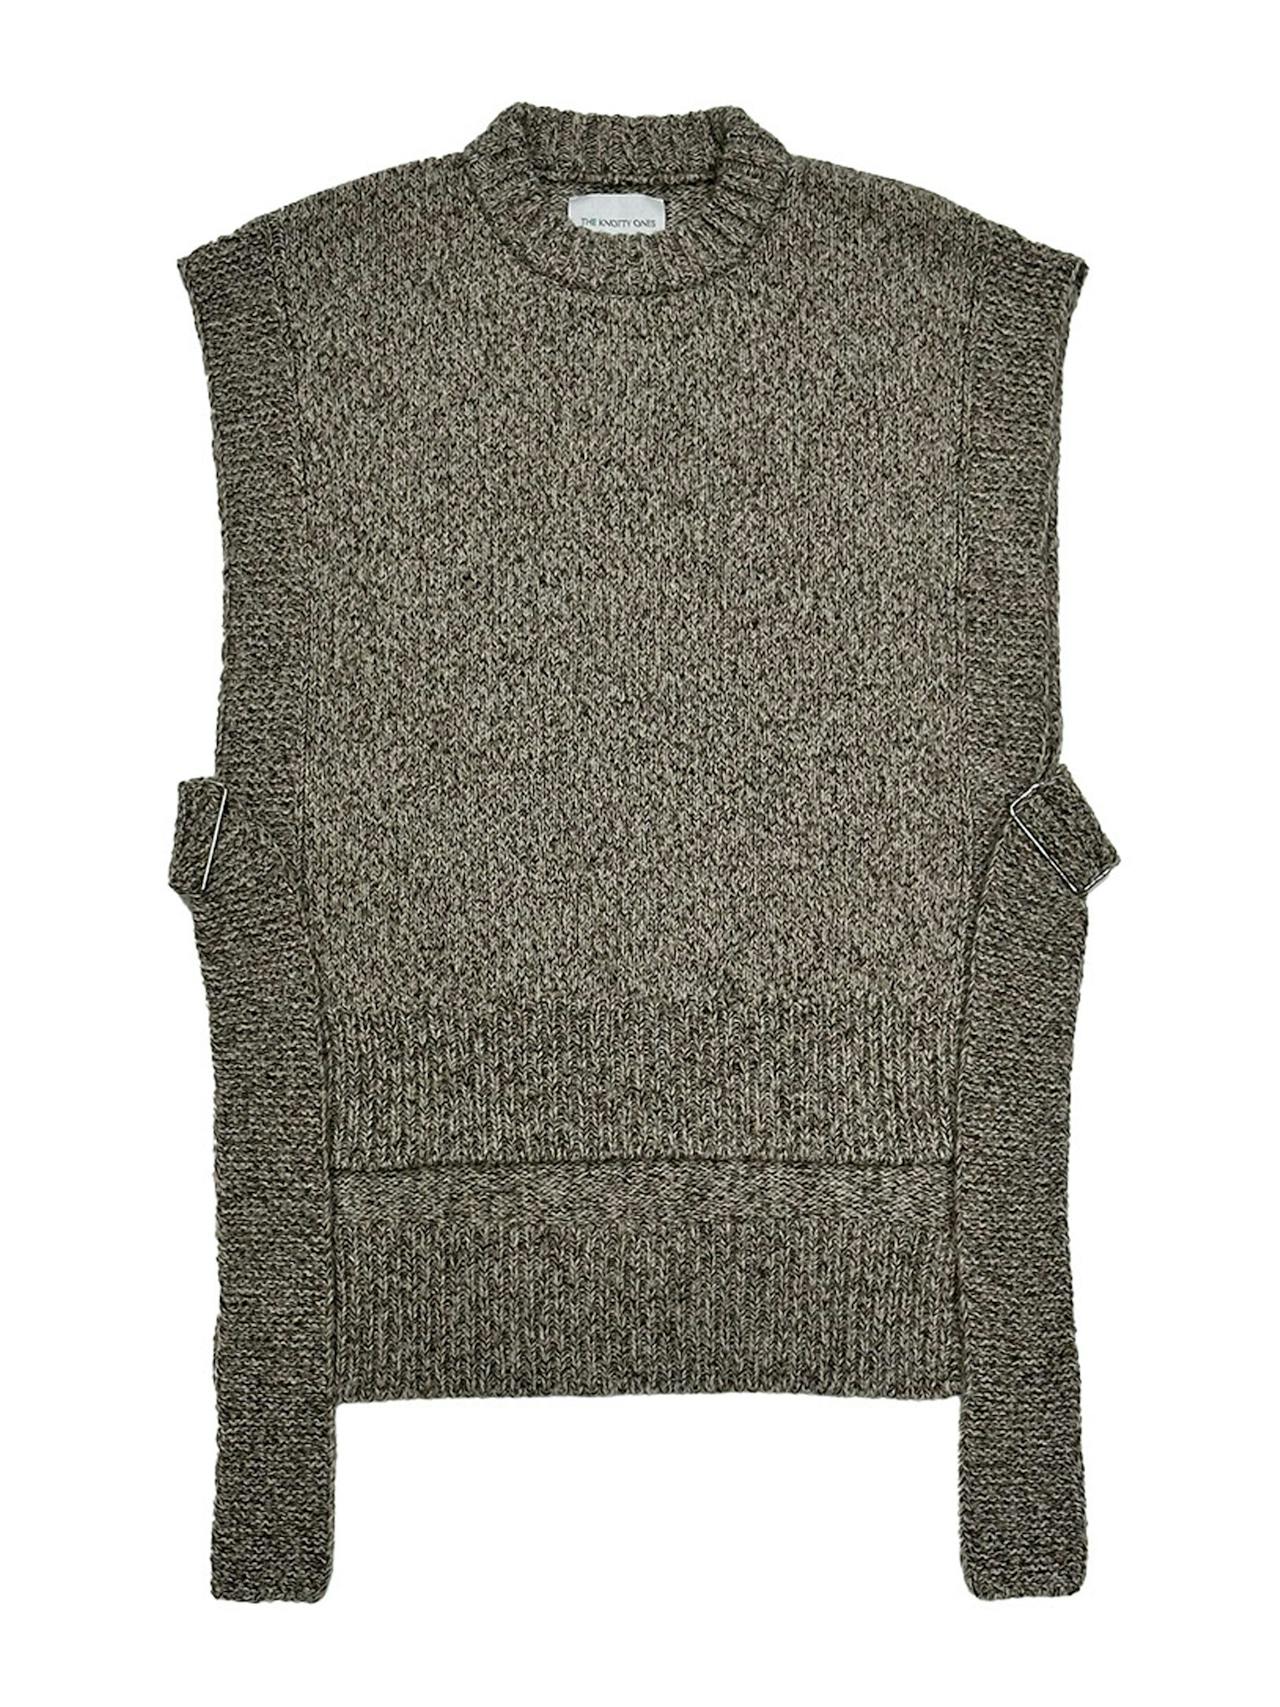 Kalvos tweed merino wool vest